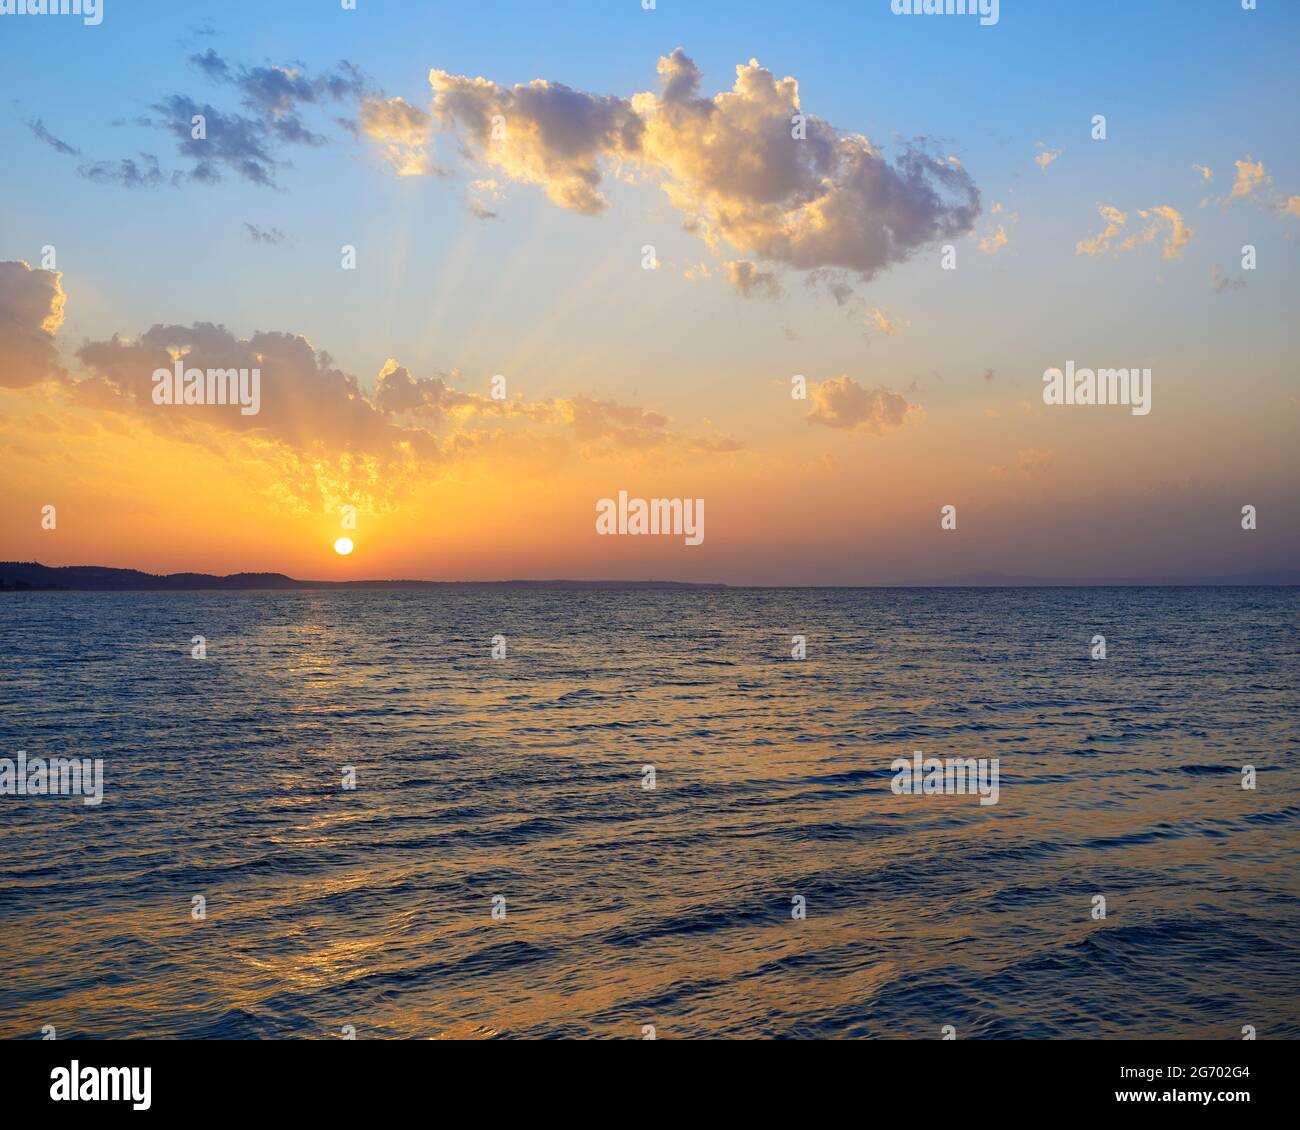 Sunset Seascape over the Aegean Sea, Kassandra, Halkidiki, Greece Stock Photo